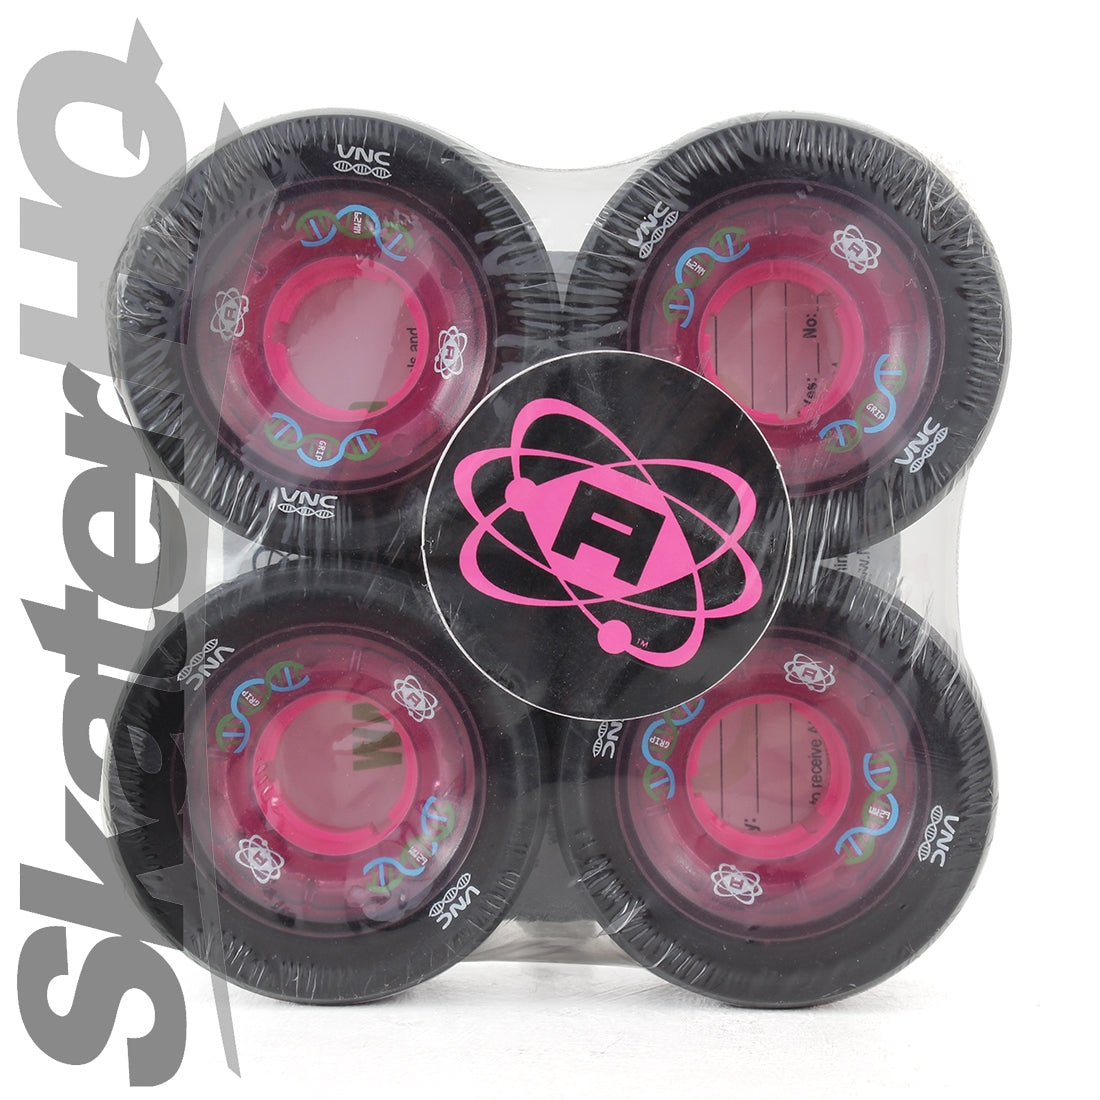 Atom DNA HP Quad 62x44mm/88a 4pk - Black/Pink Roller Skate Wheels